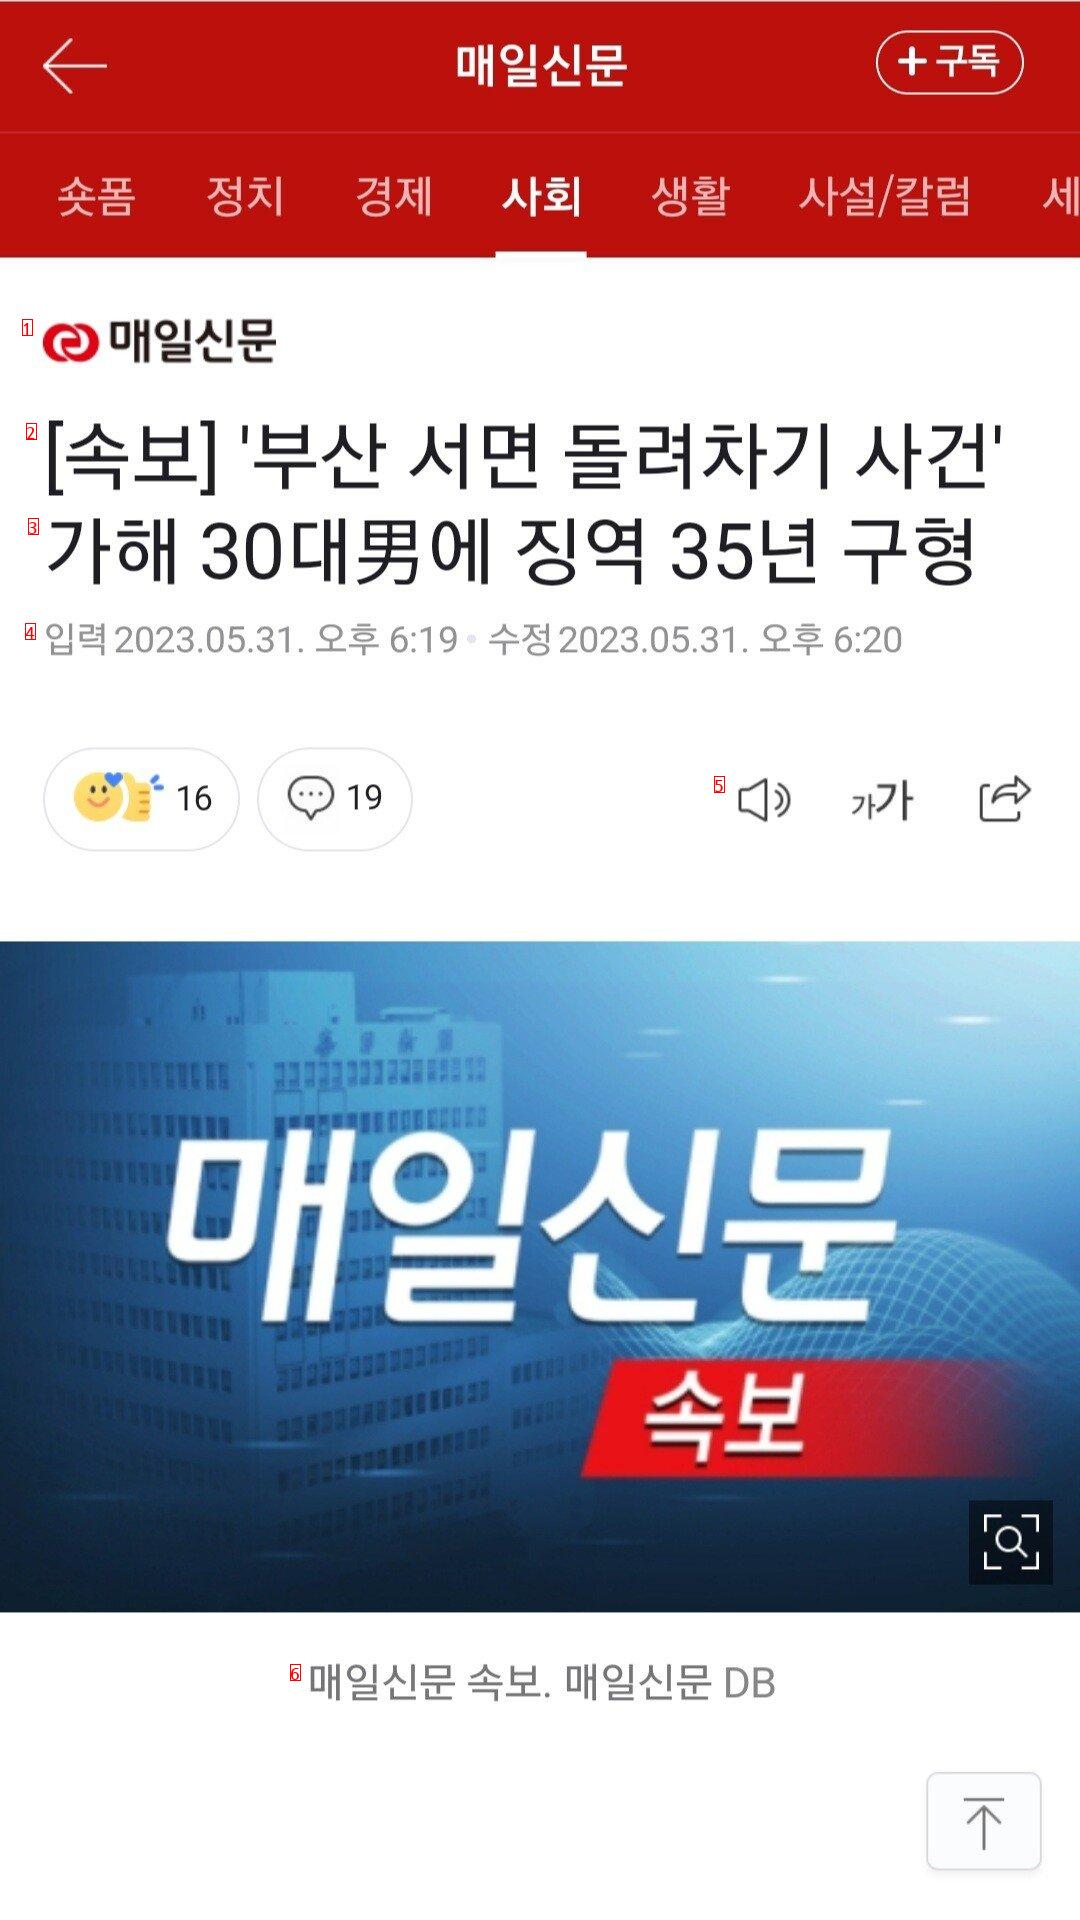 速報釜山西面回し蹴り事件、加害30代男性に懲役35年求刑